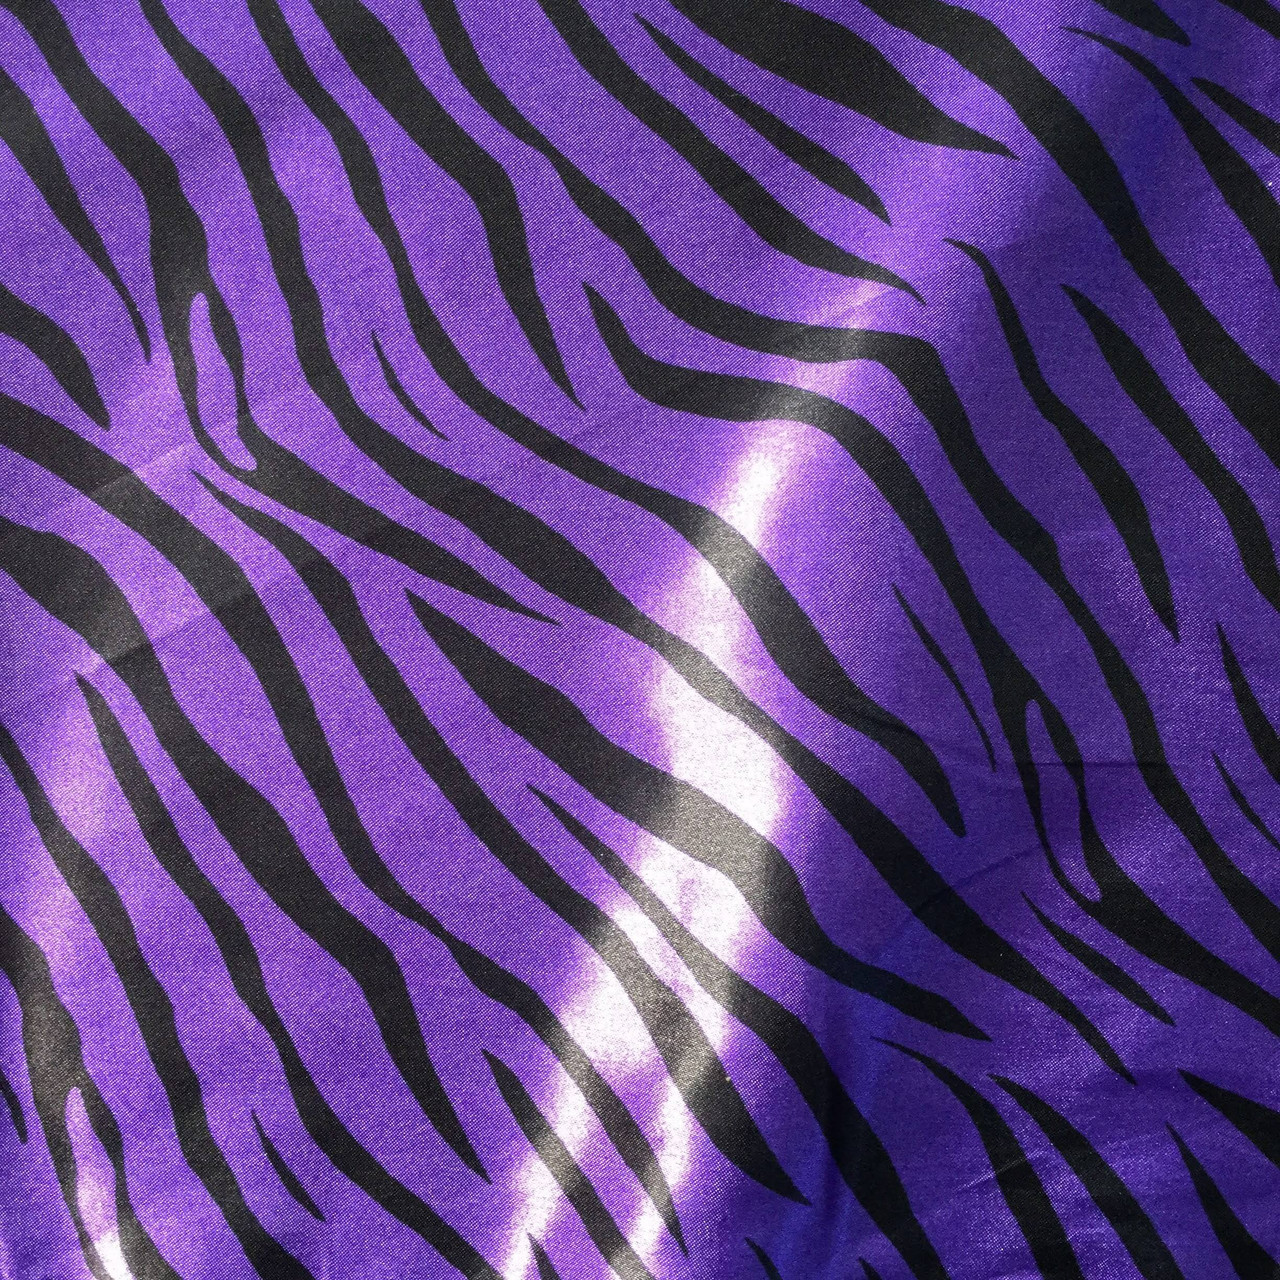 purple zebra | Poster